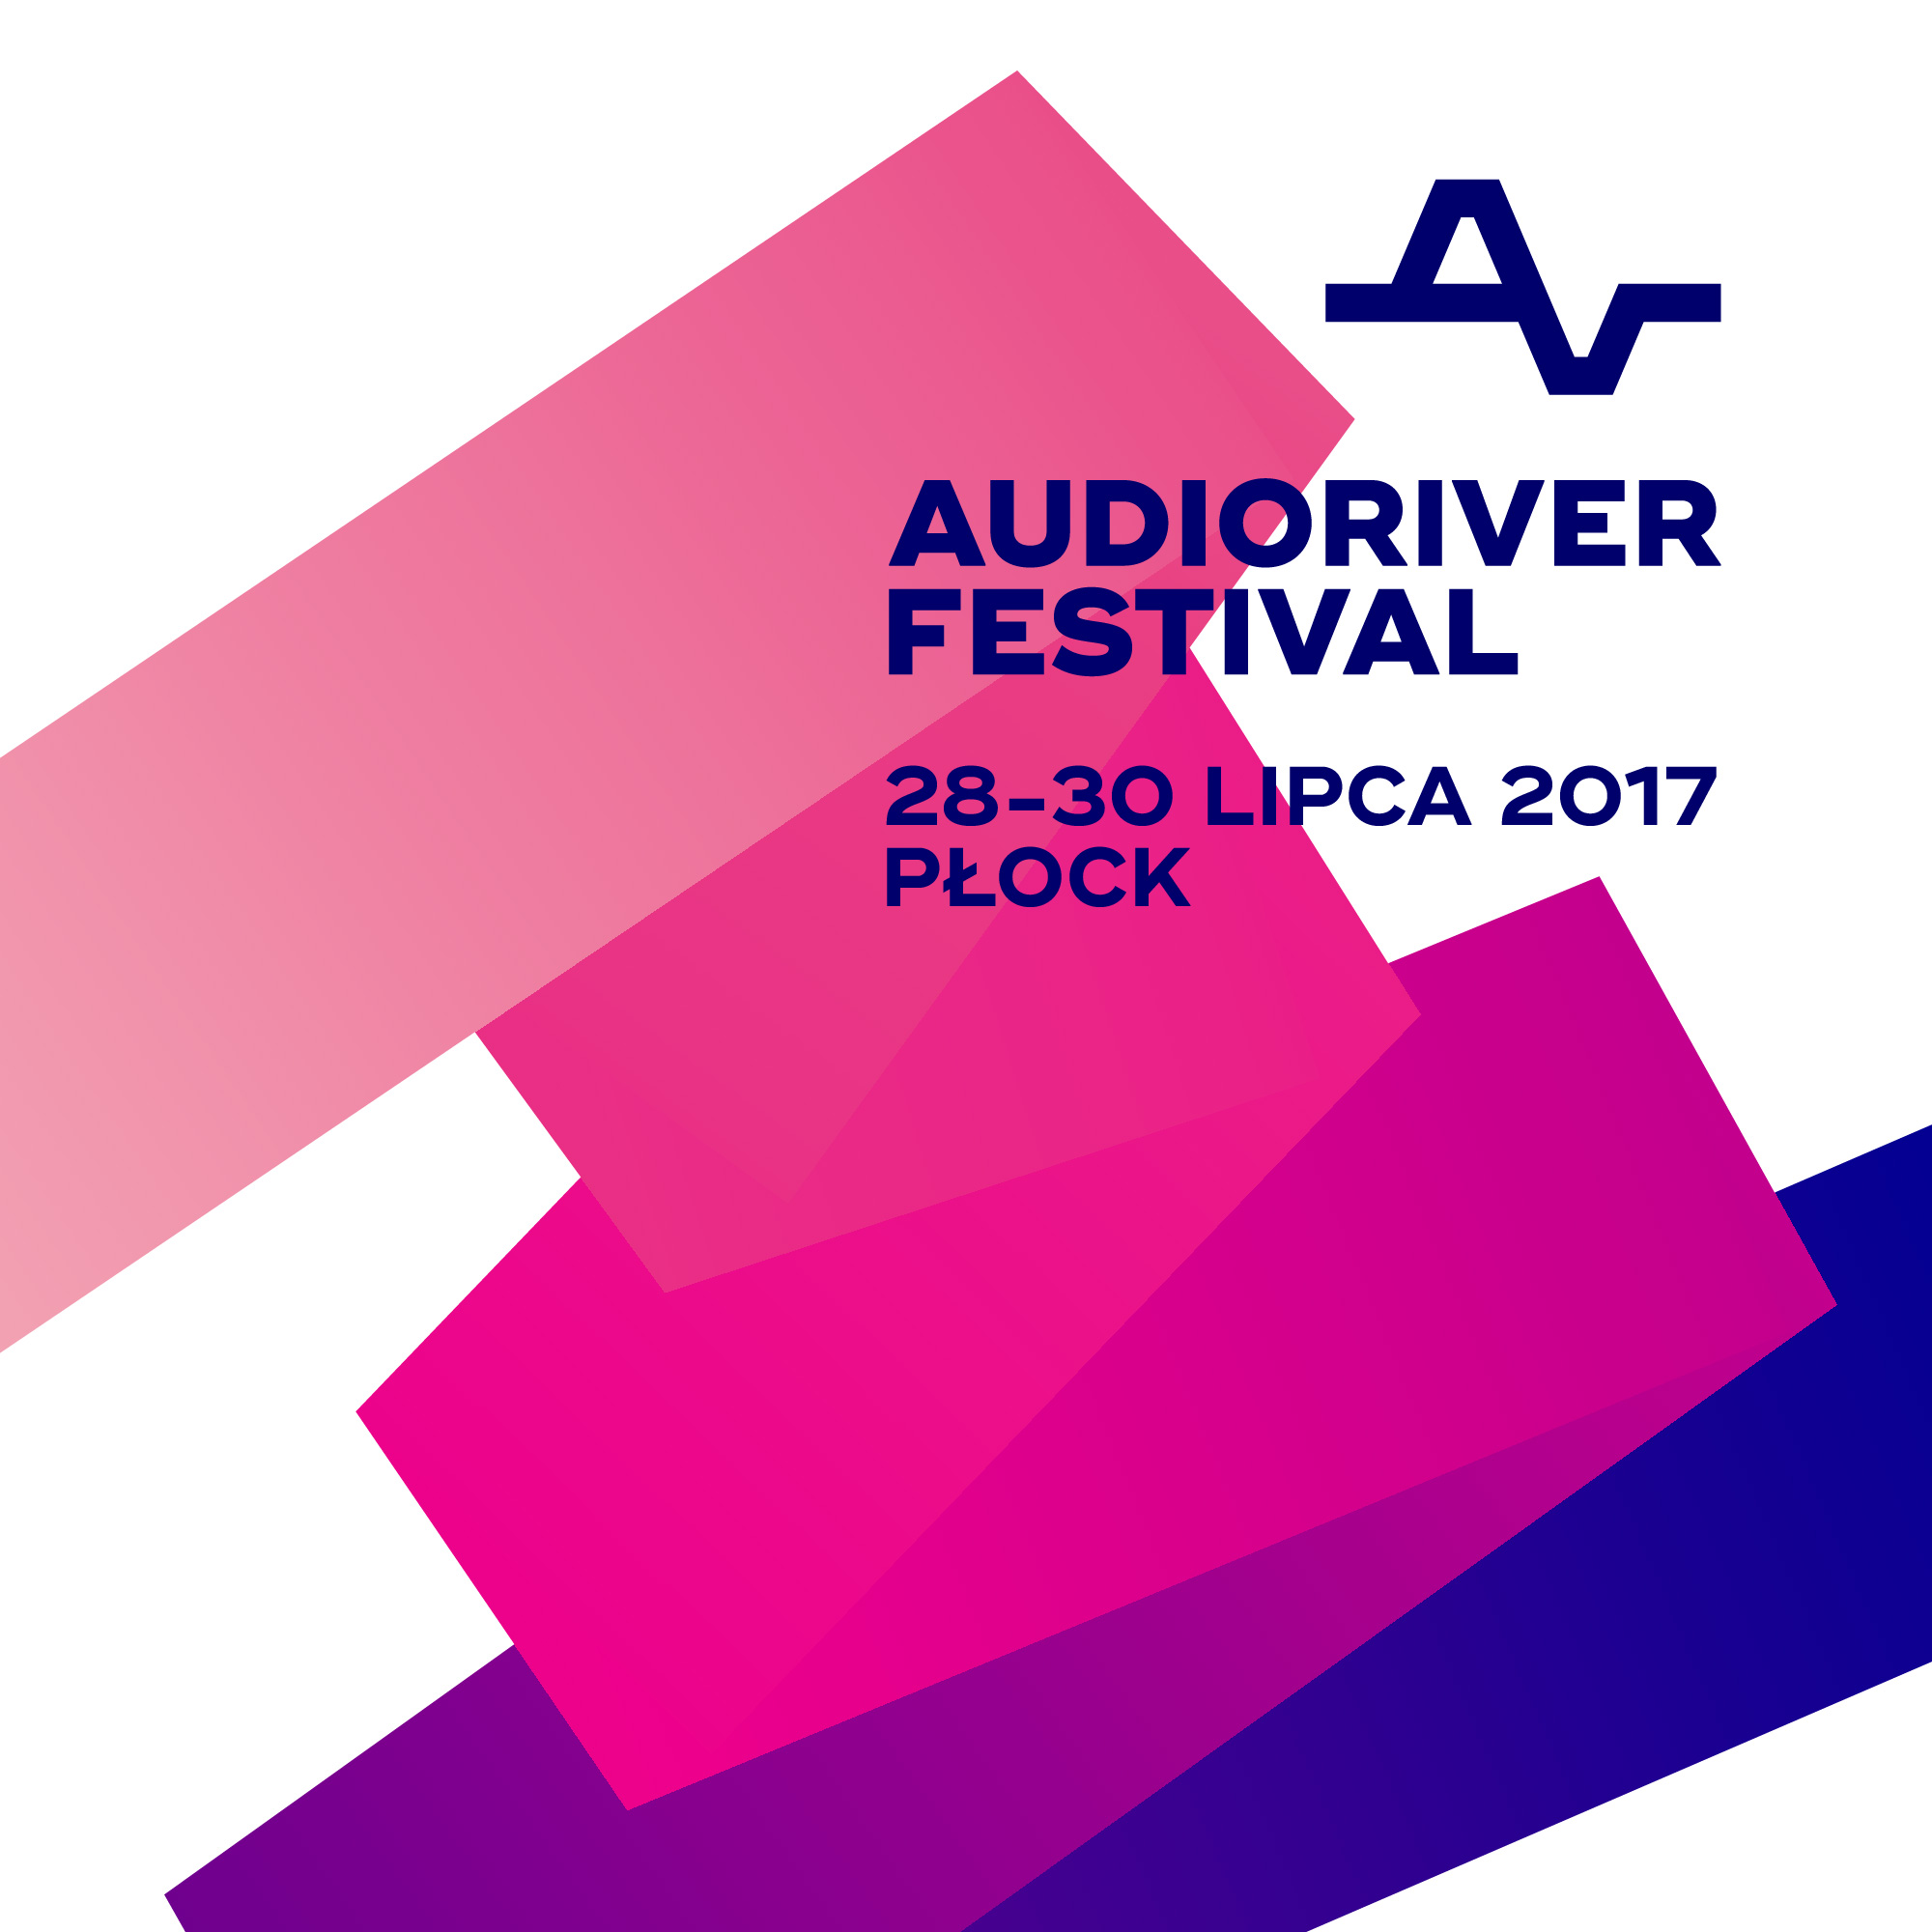 Elektronika ma się dobrze – relacja z Audioriver Festival 2017